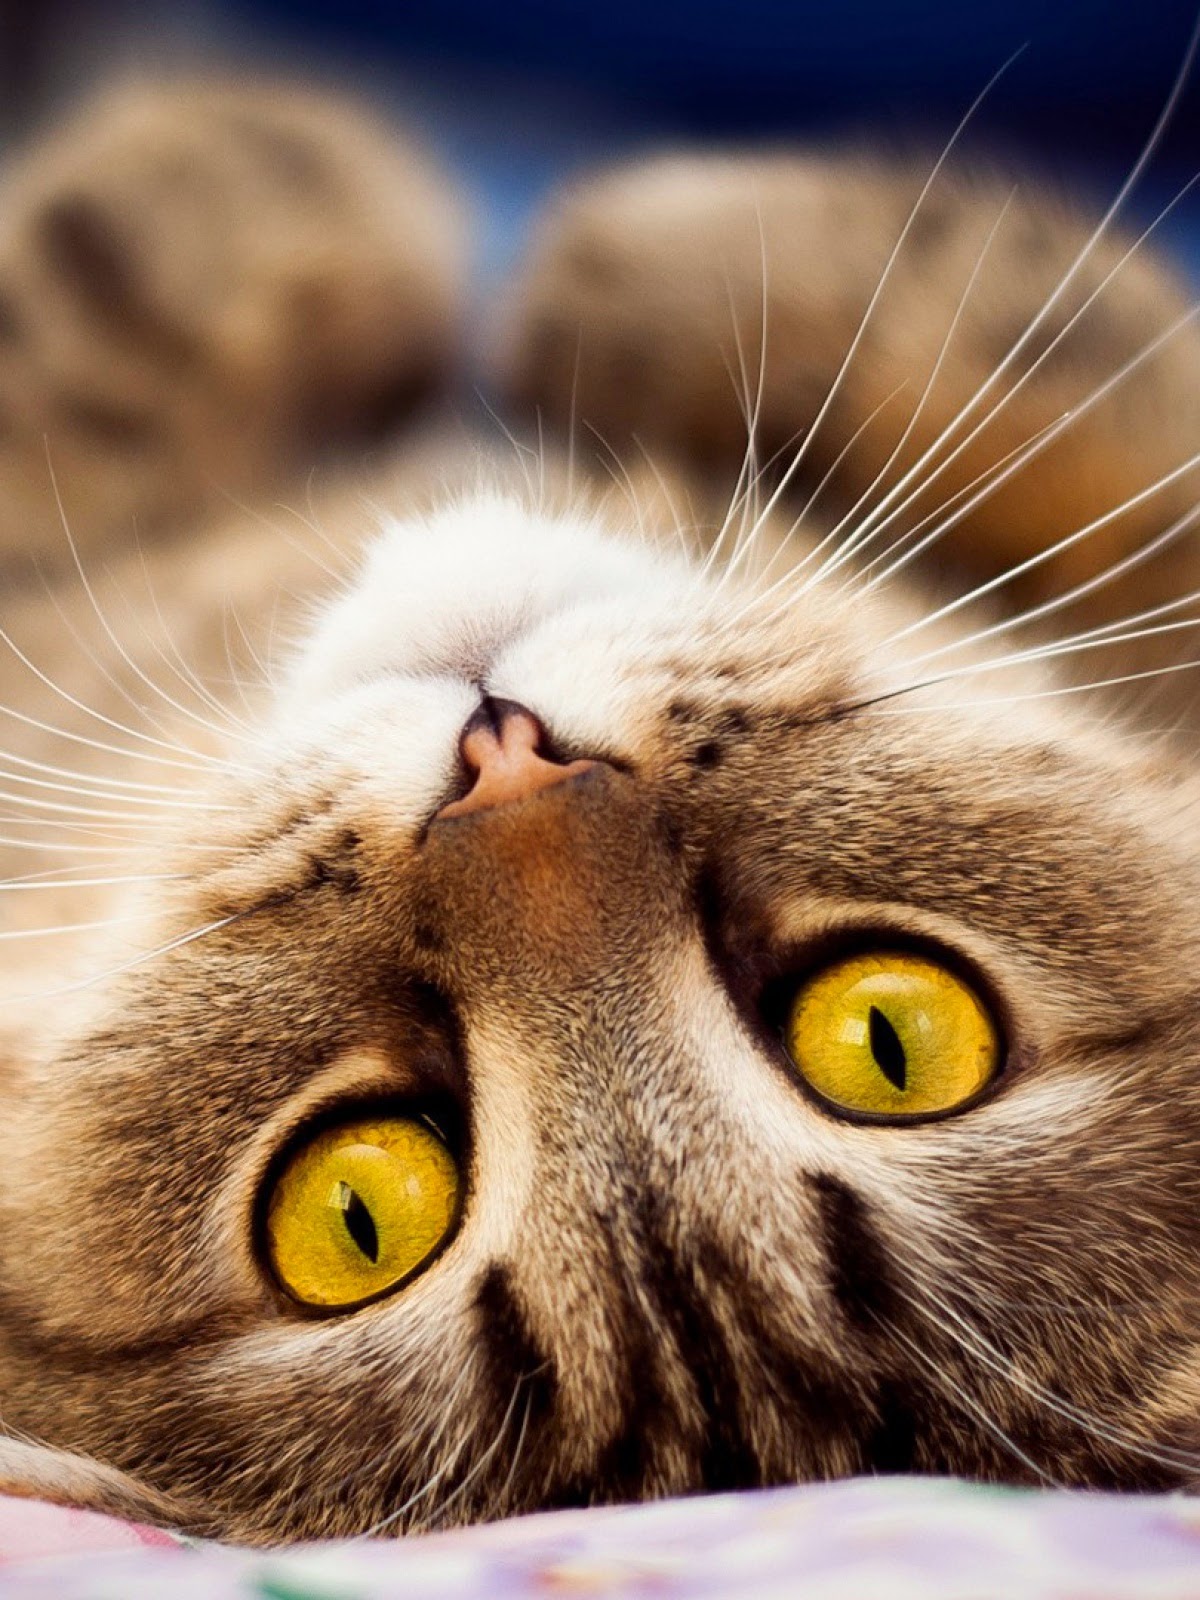 Gambar Anak Kucing Lucu Banget Terlengkap DPMenarik